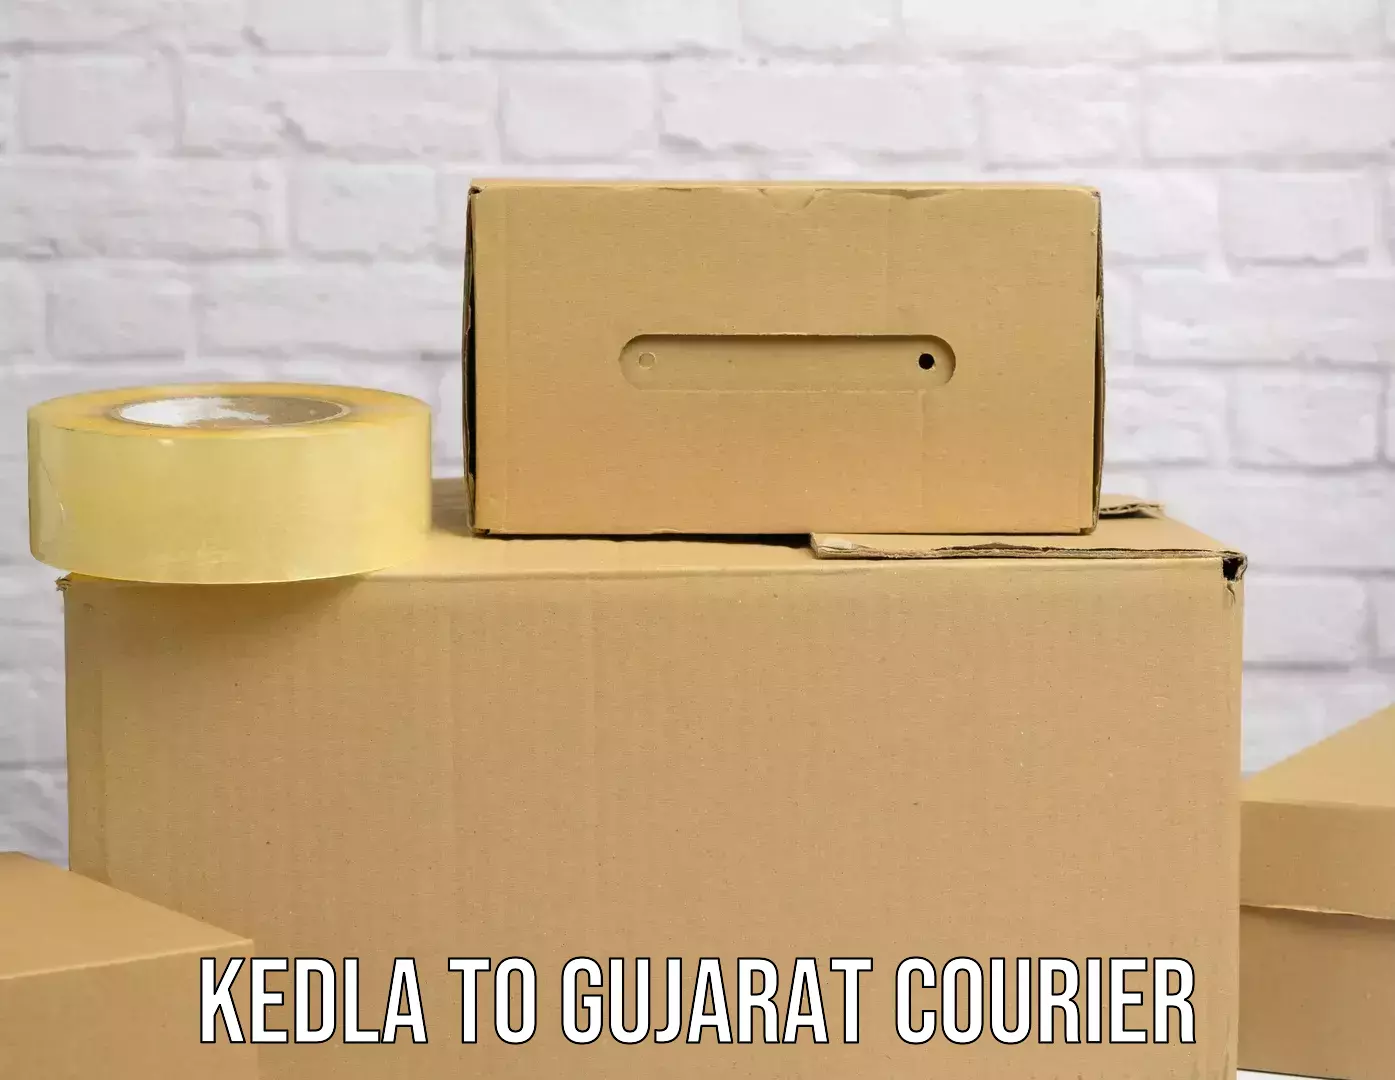 Parcel service for businesses Kedla to Gujarat